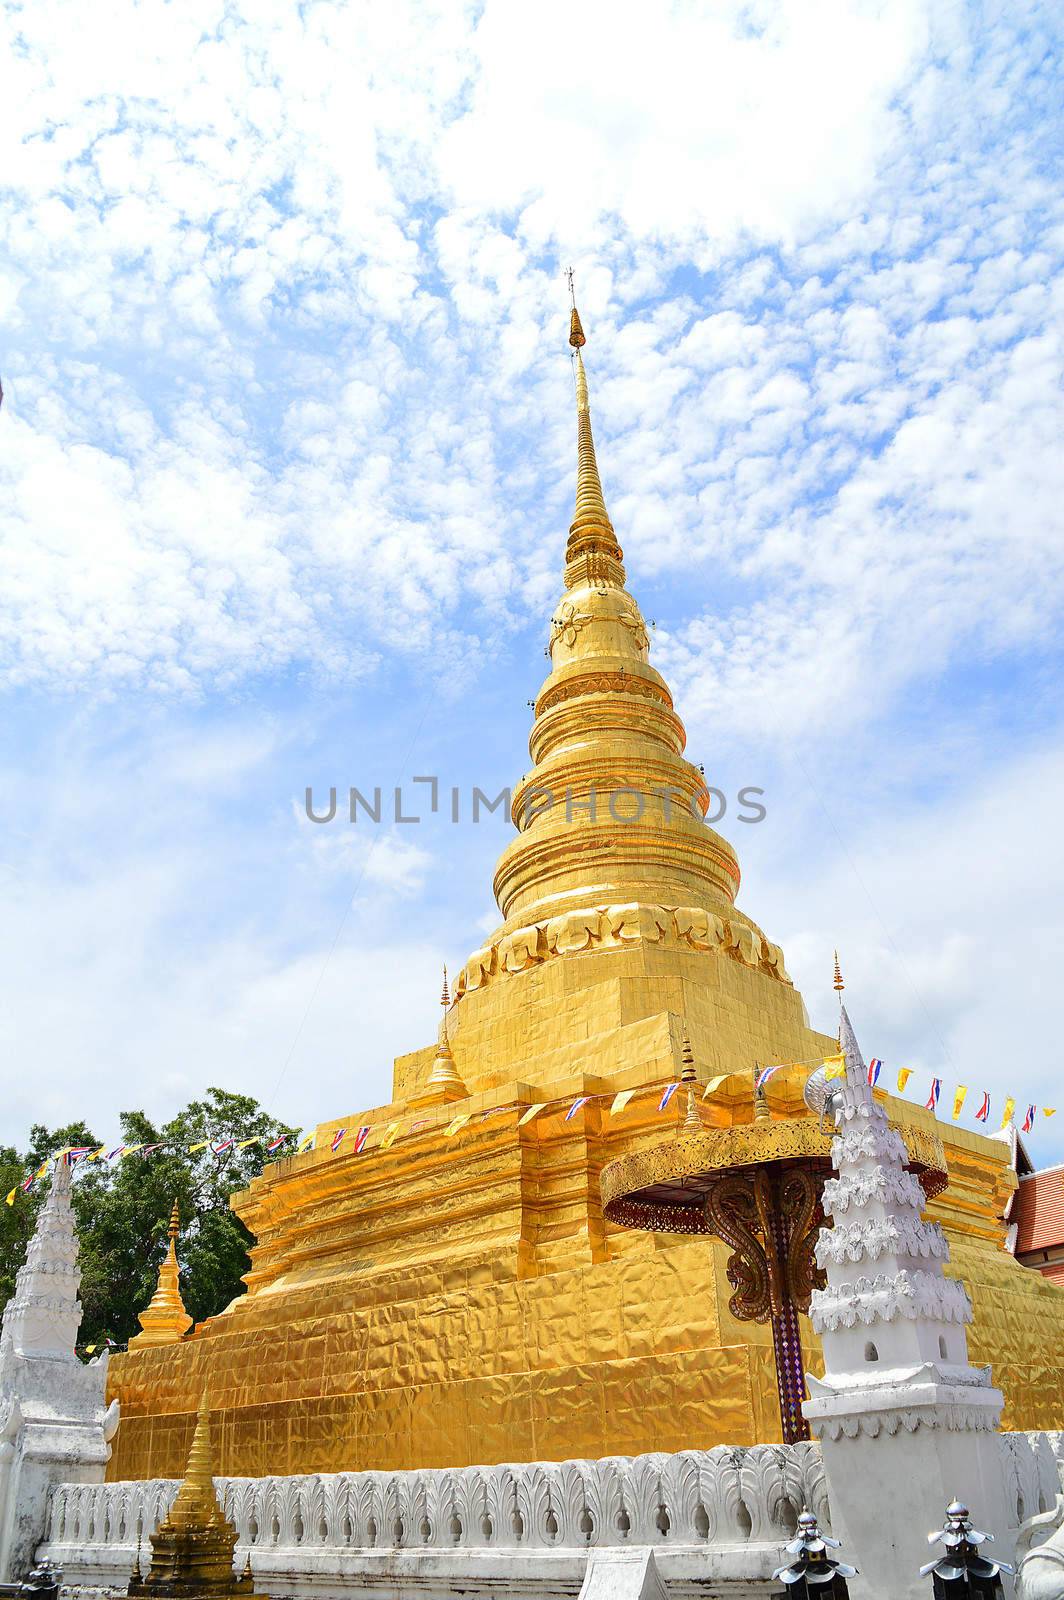 golden Pagoda at Wat Phra That Chae Haeng, Nan province, Thailand







golden Pagoda at Wat Phra That Chae Haeng, Nan province, Thailand